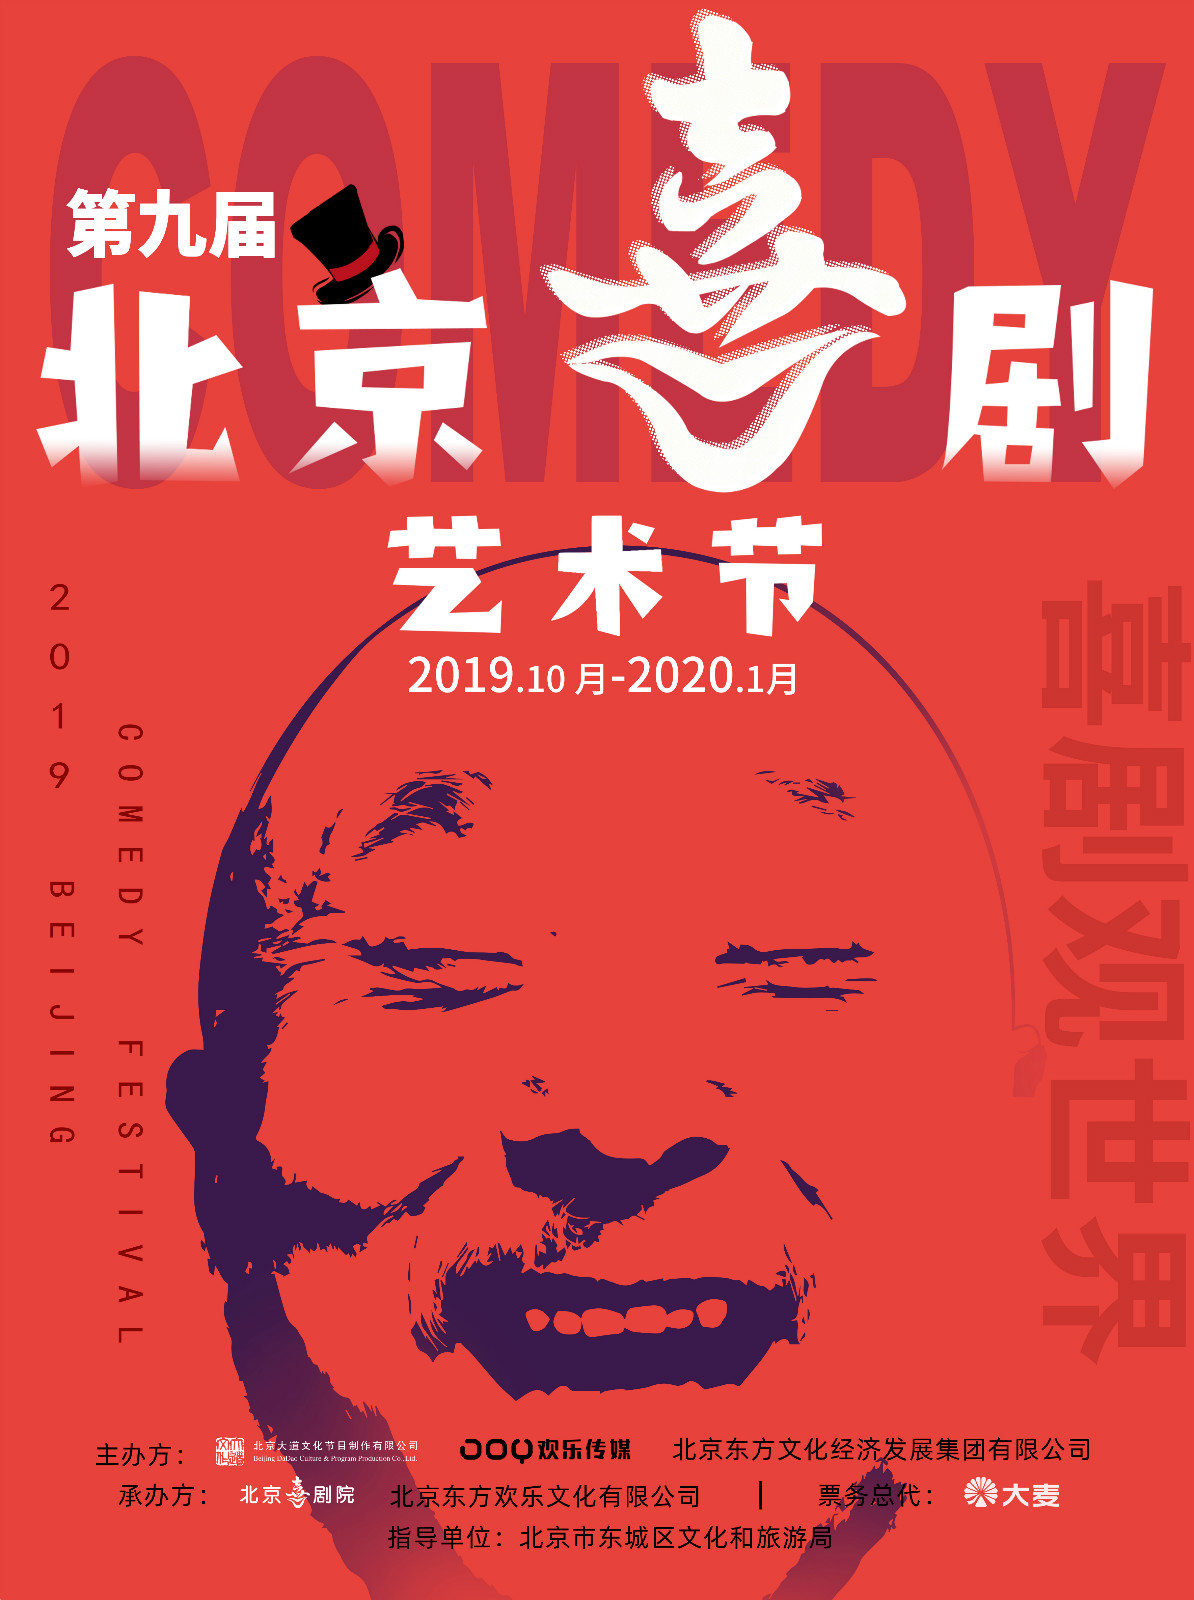 第九屆北京喜劇藝術節開幕 歡樂傳媒助推中國喜劇線下發展新生態